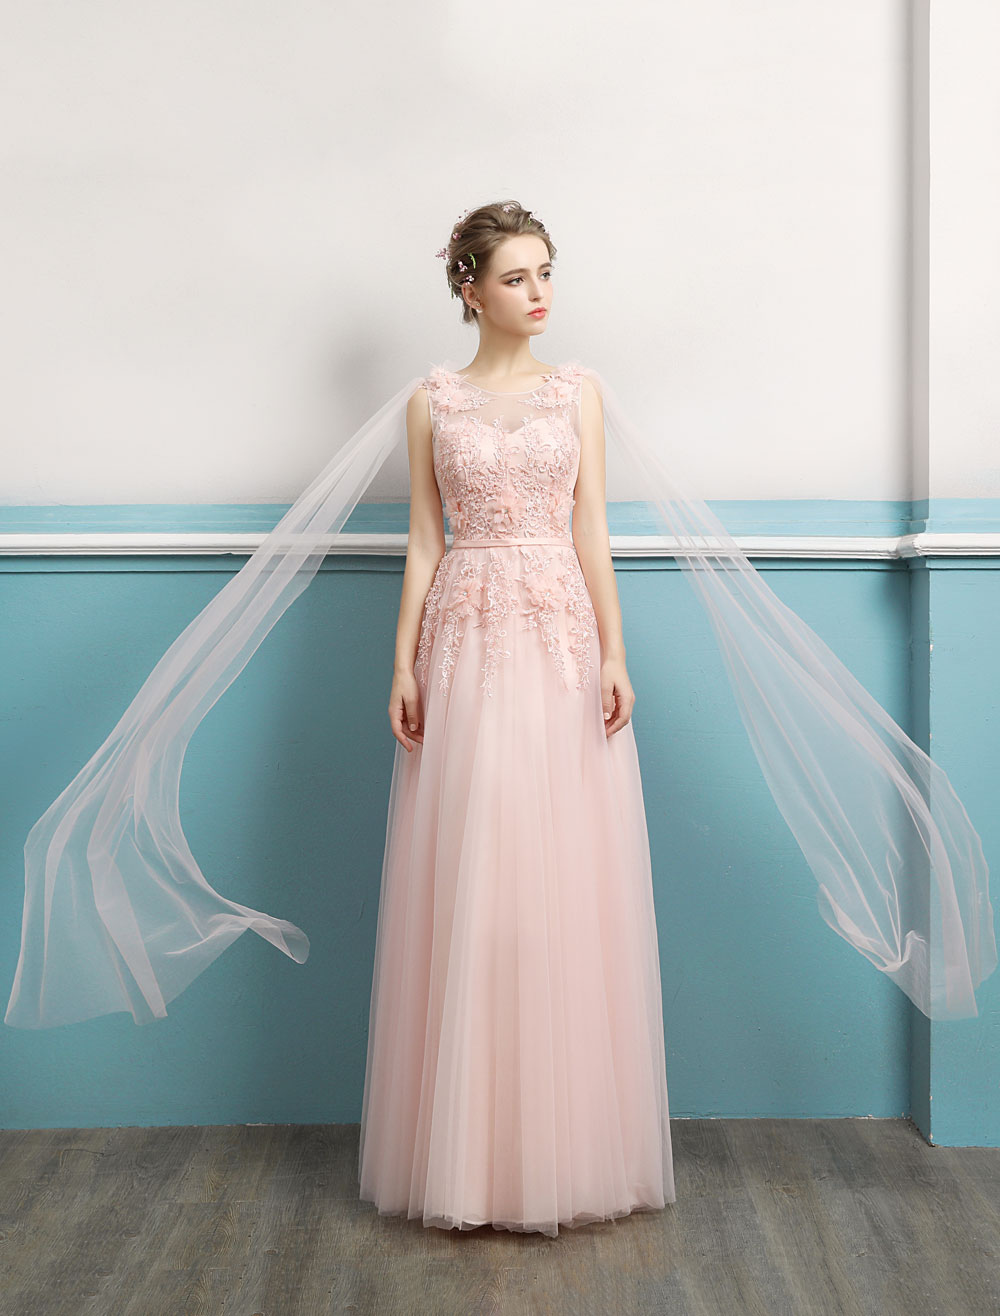 soft pink formal dresses